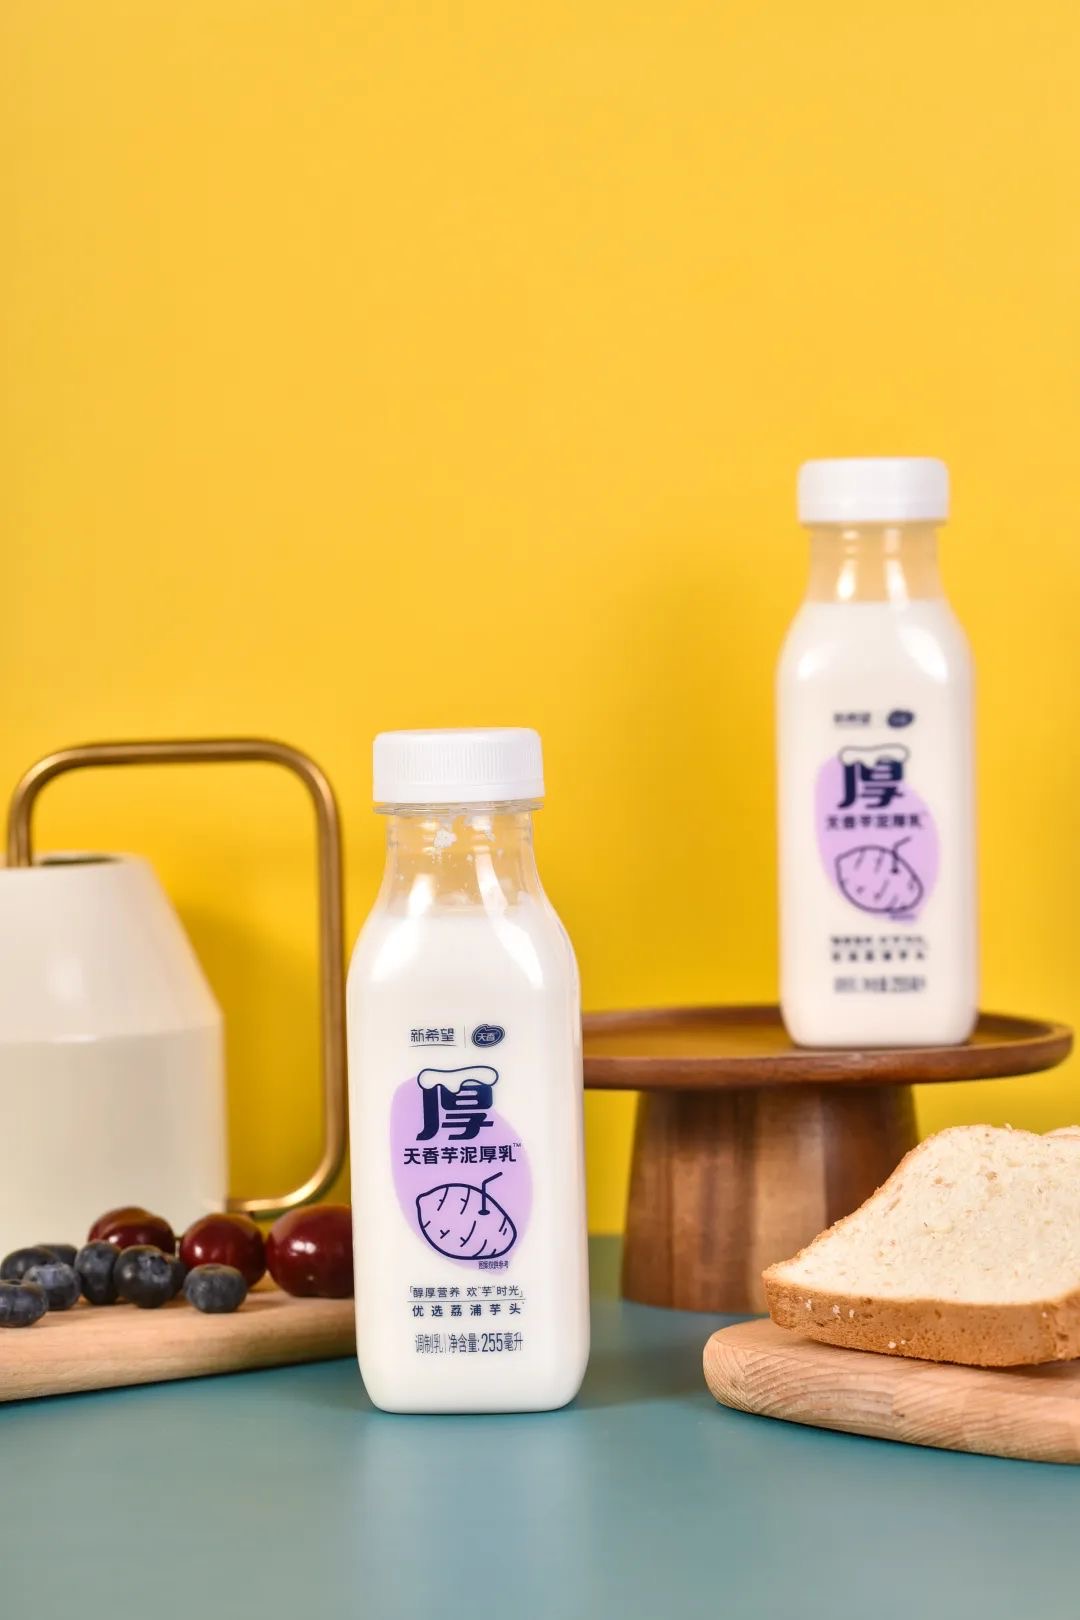 安徽新希望白帝乳业有限公司 - 产品中心 - 低温酸奶